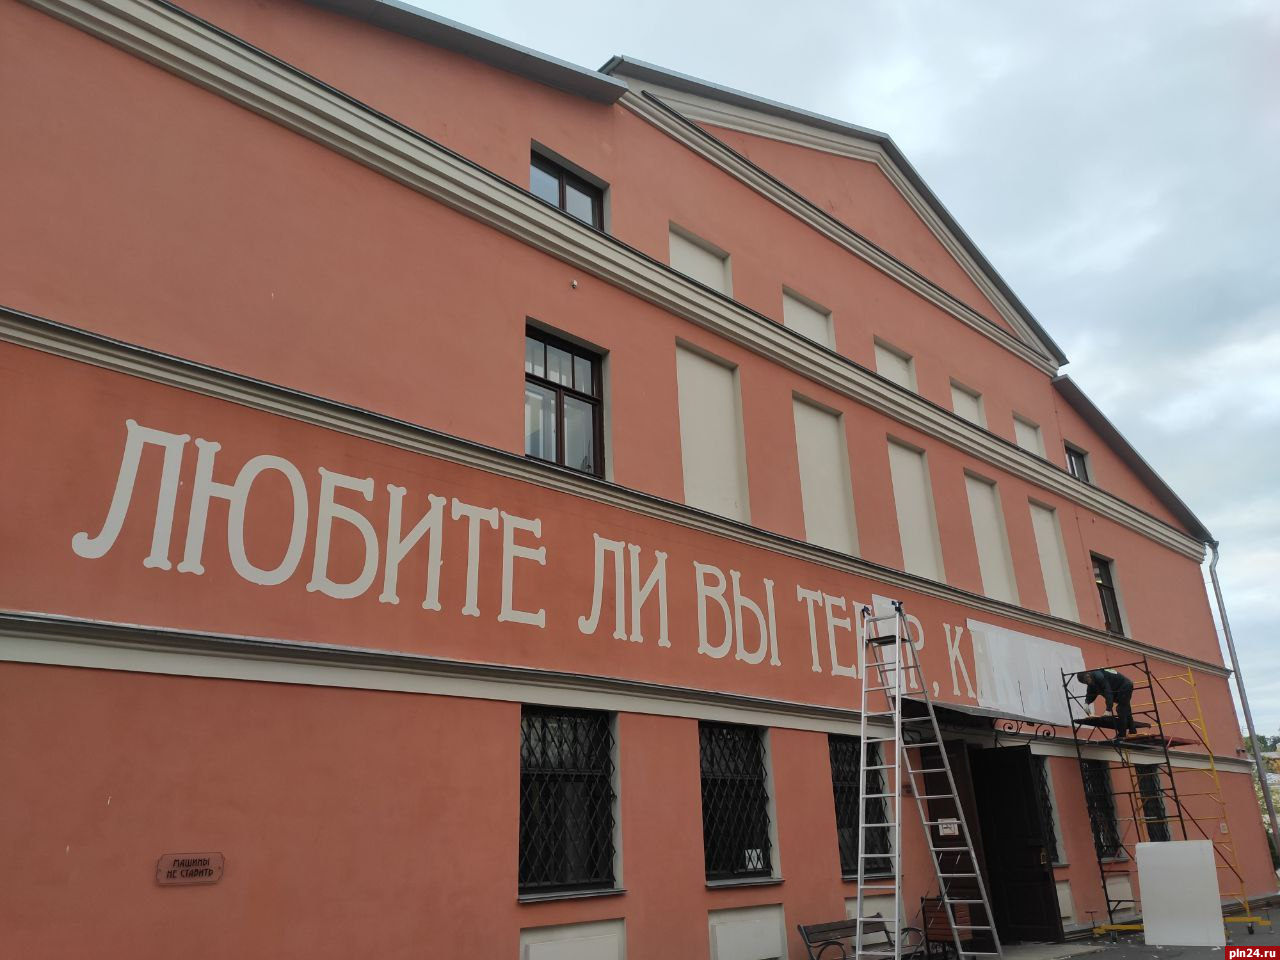 Фотофакт: На здании драмтеатра в Пскове появится вопрос